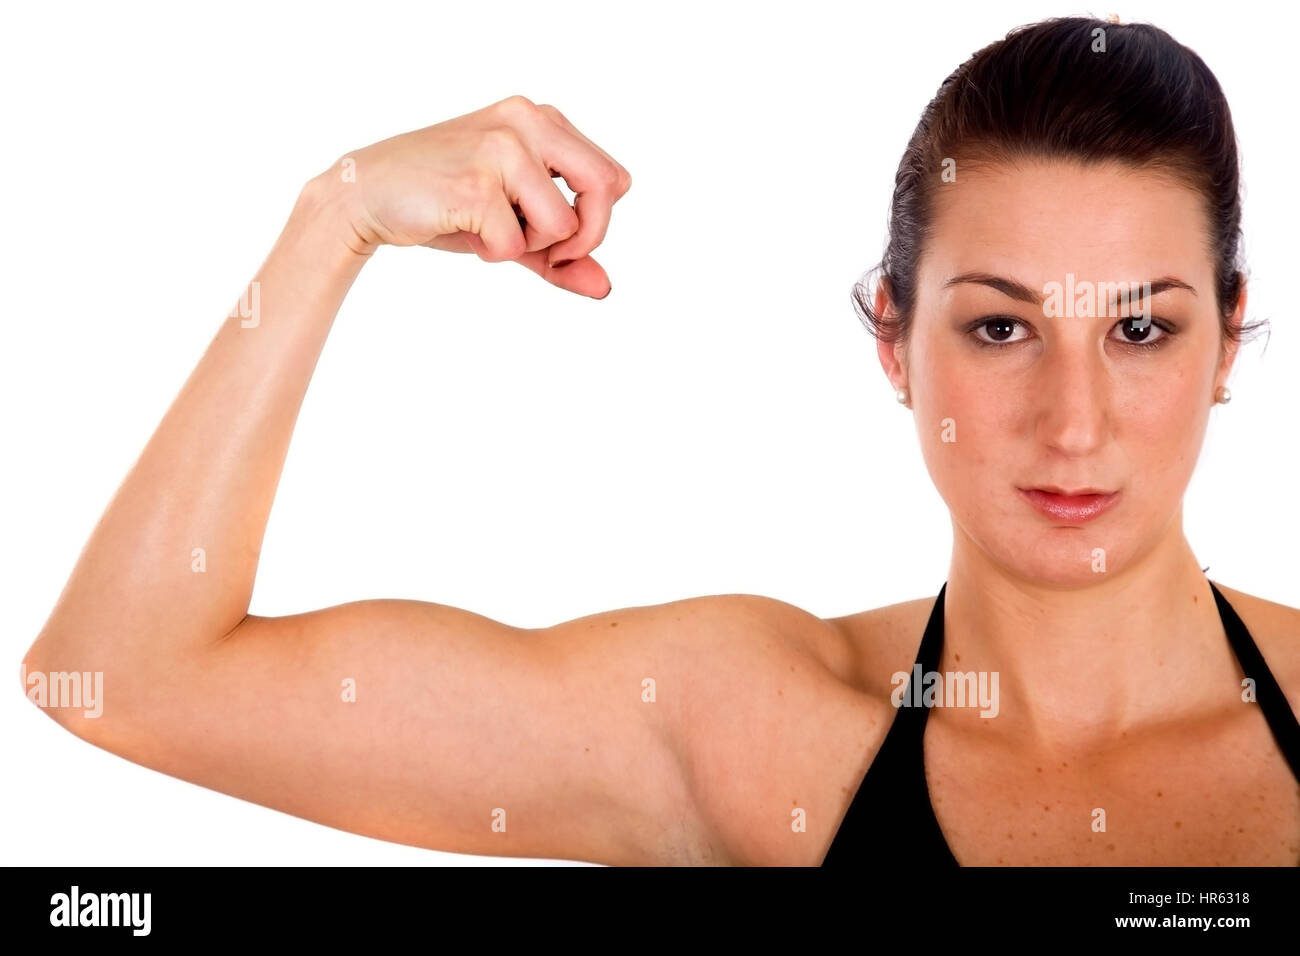 Chica Fitness Mostrando Sus Bíceps Sobre Un Fondo Blanco Fotografía De Stock Alamy 4095